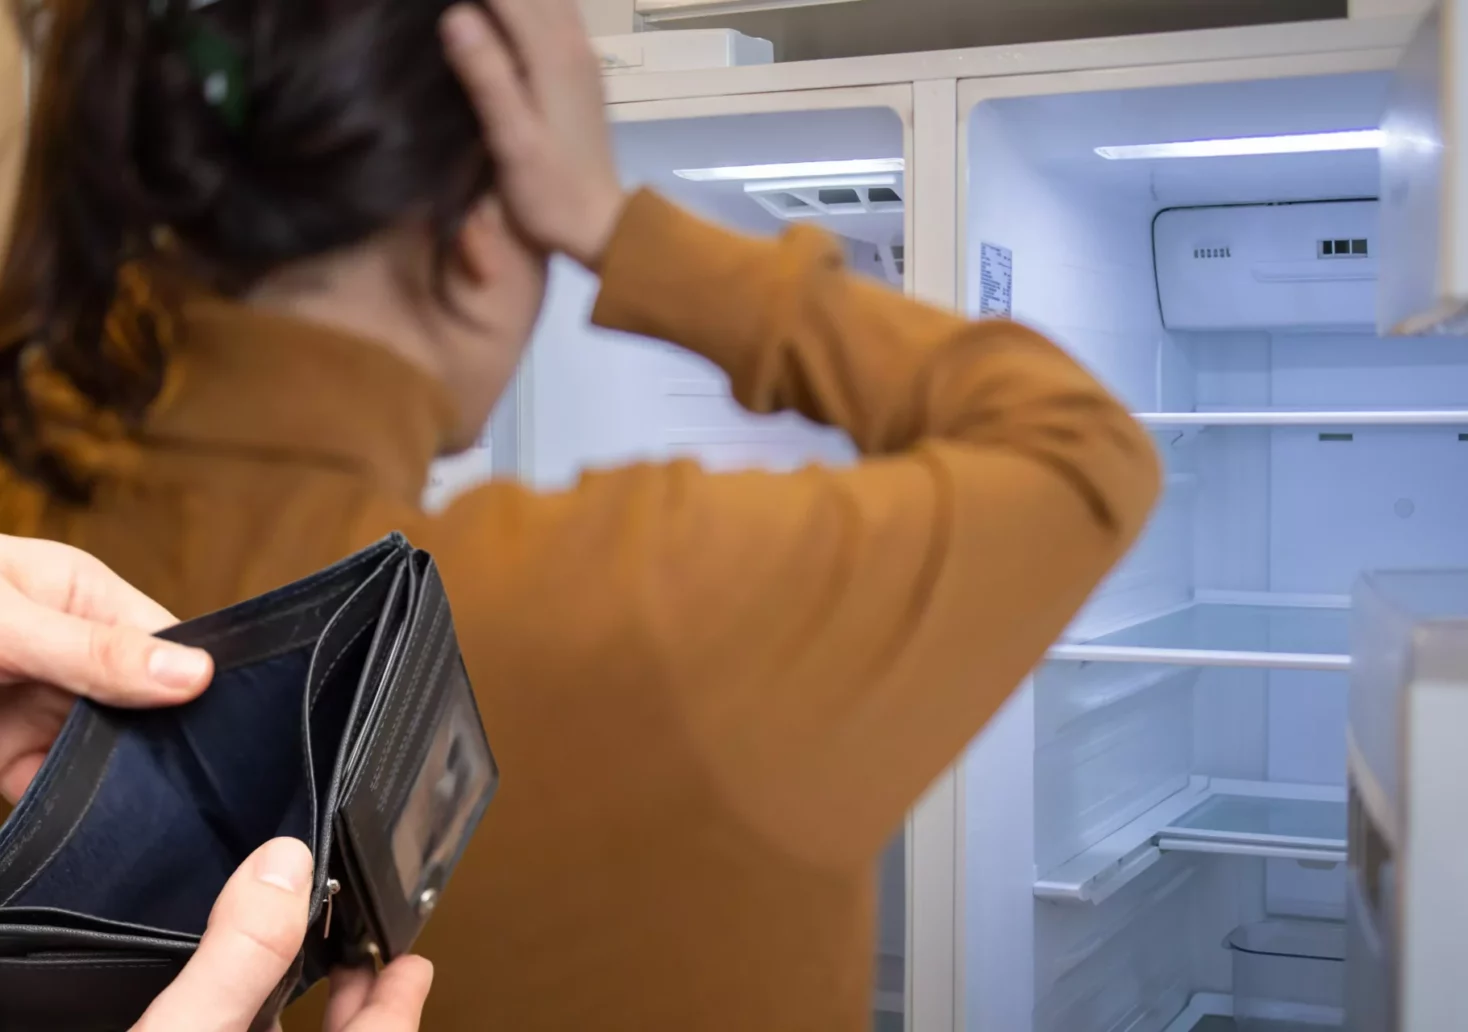 Ein Bild auf 5min.at zeigt eine Frau vor einem leeren Kühlschrank und daneben Hände, die eine leere Brieftasche halten